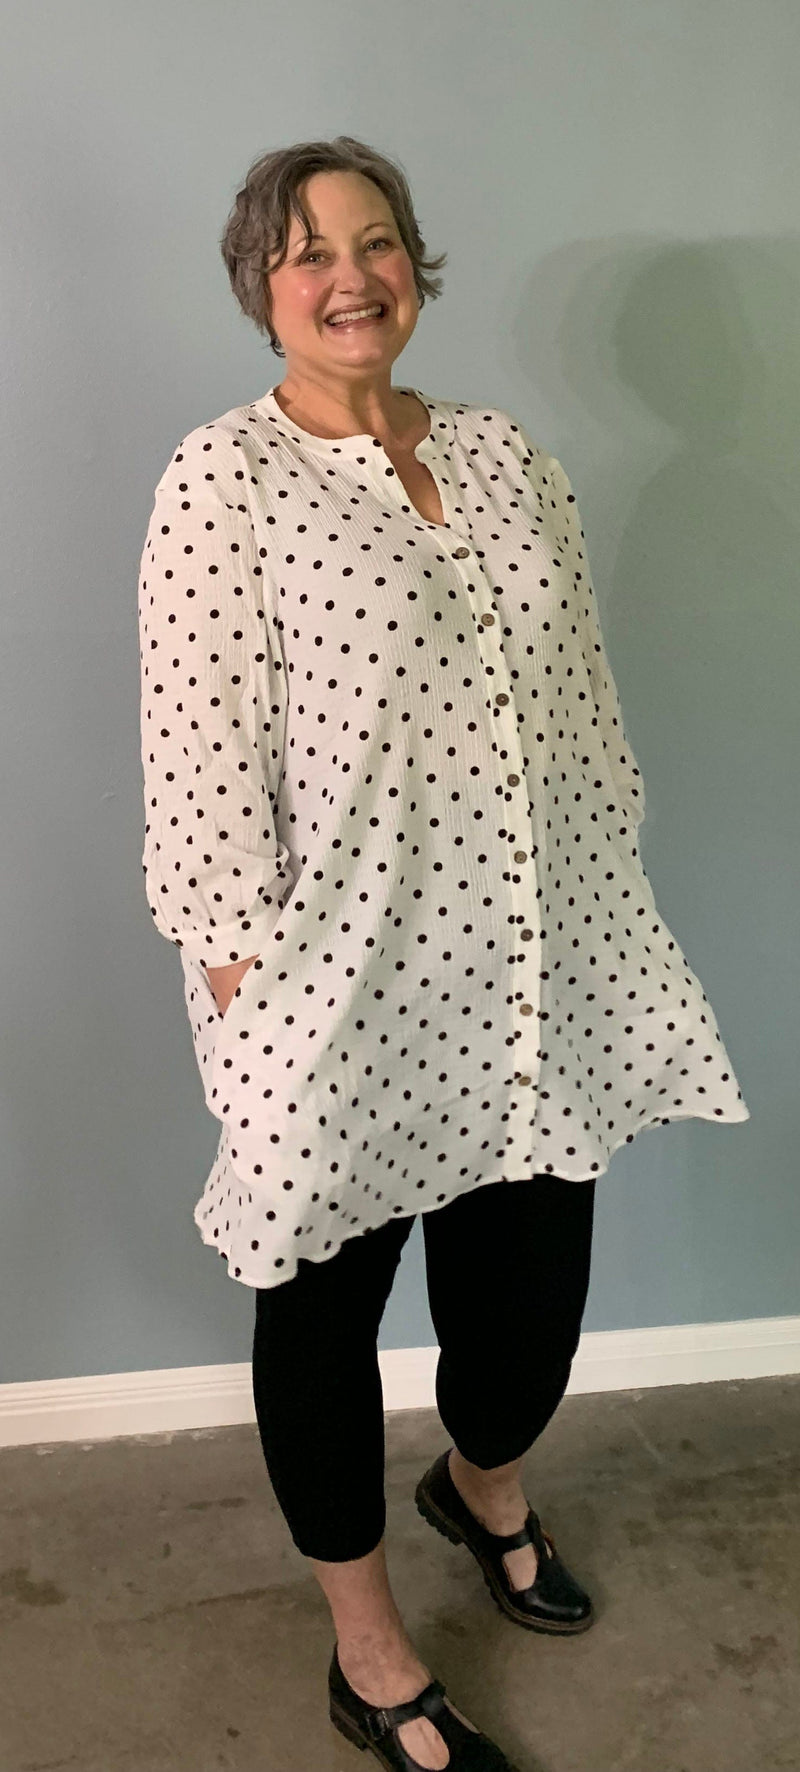 Polka Dot Dress - Plus-Size Women's Clothes online | Dresses, tops, bottoms & more - Et Tu Boutique